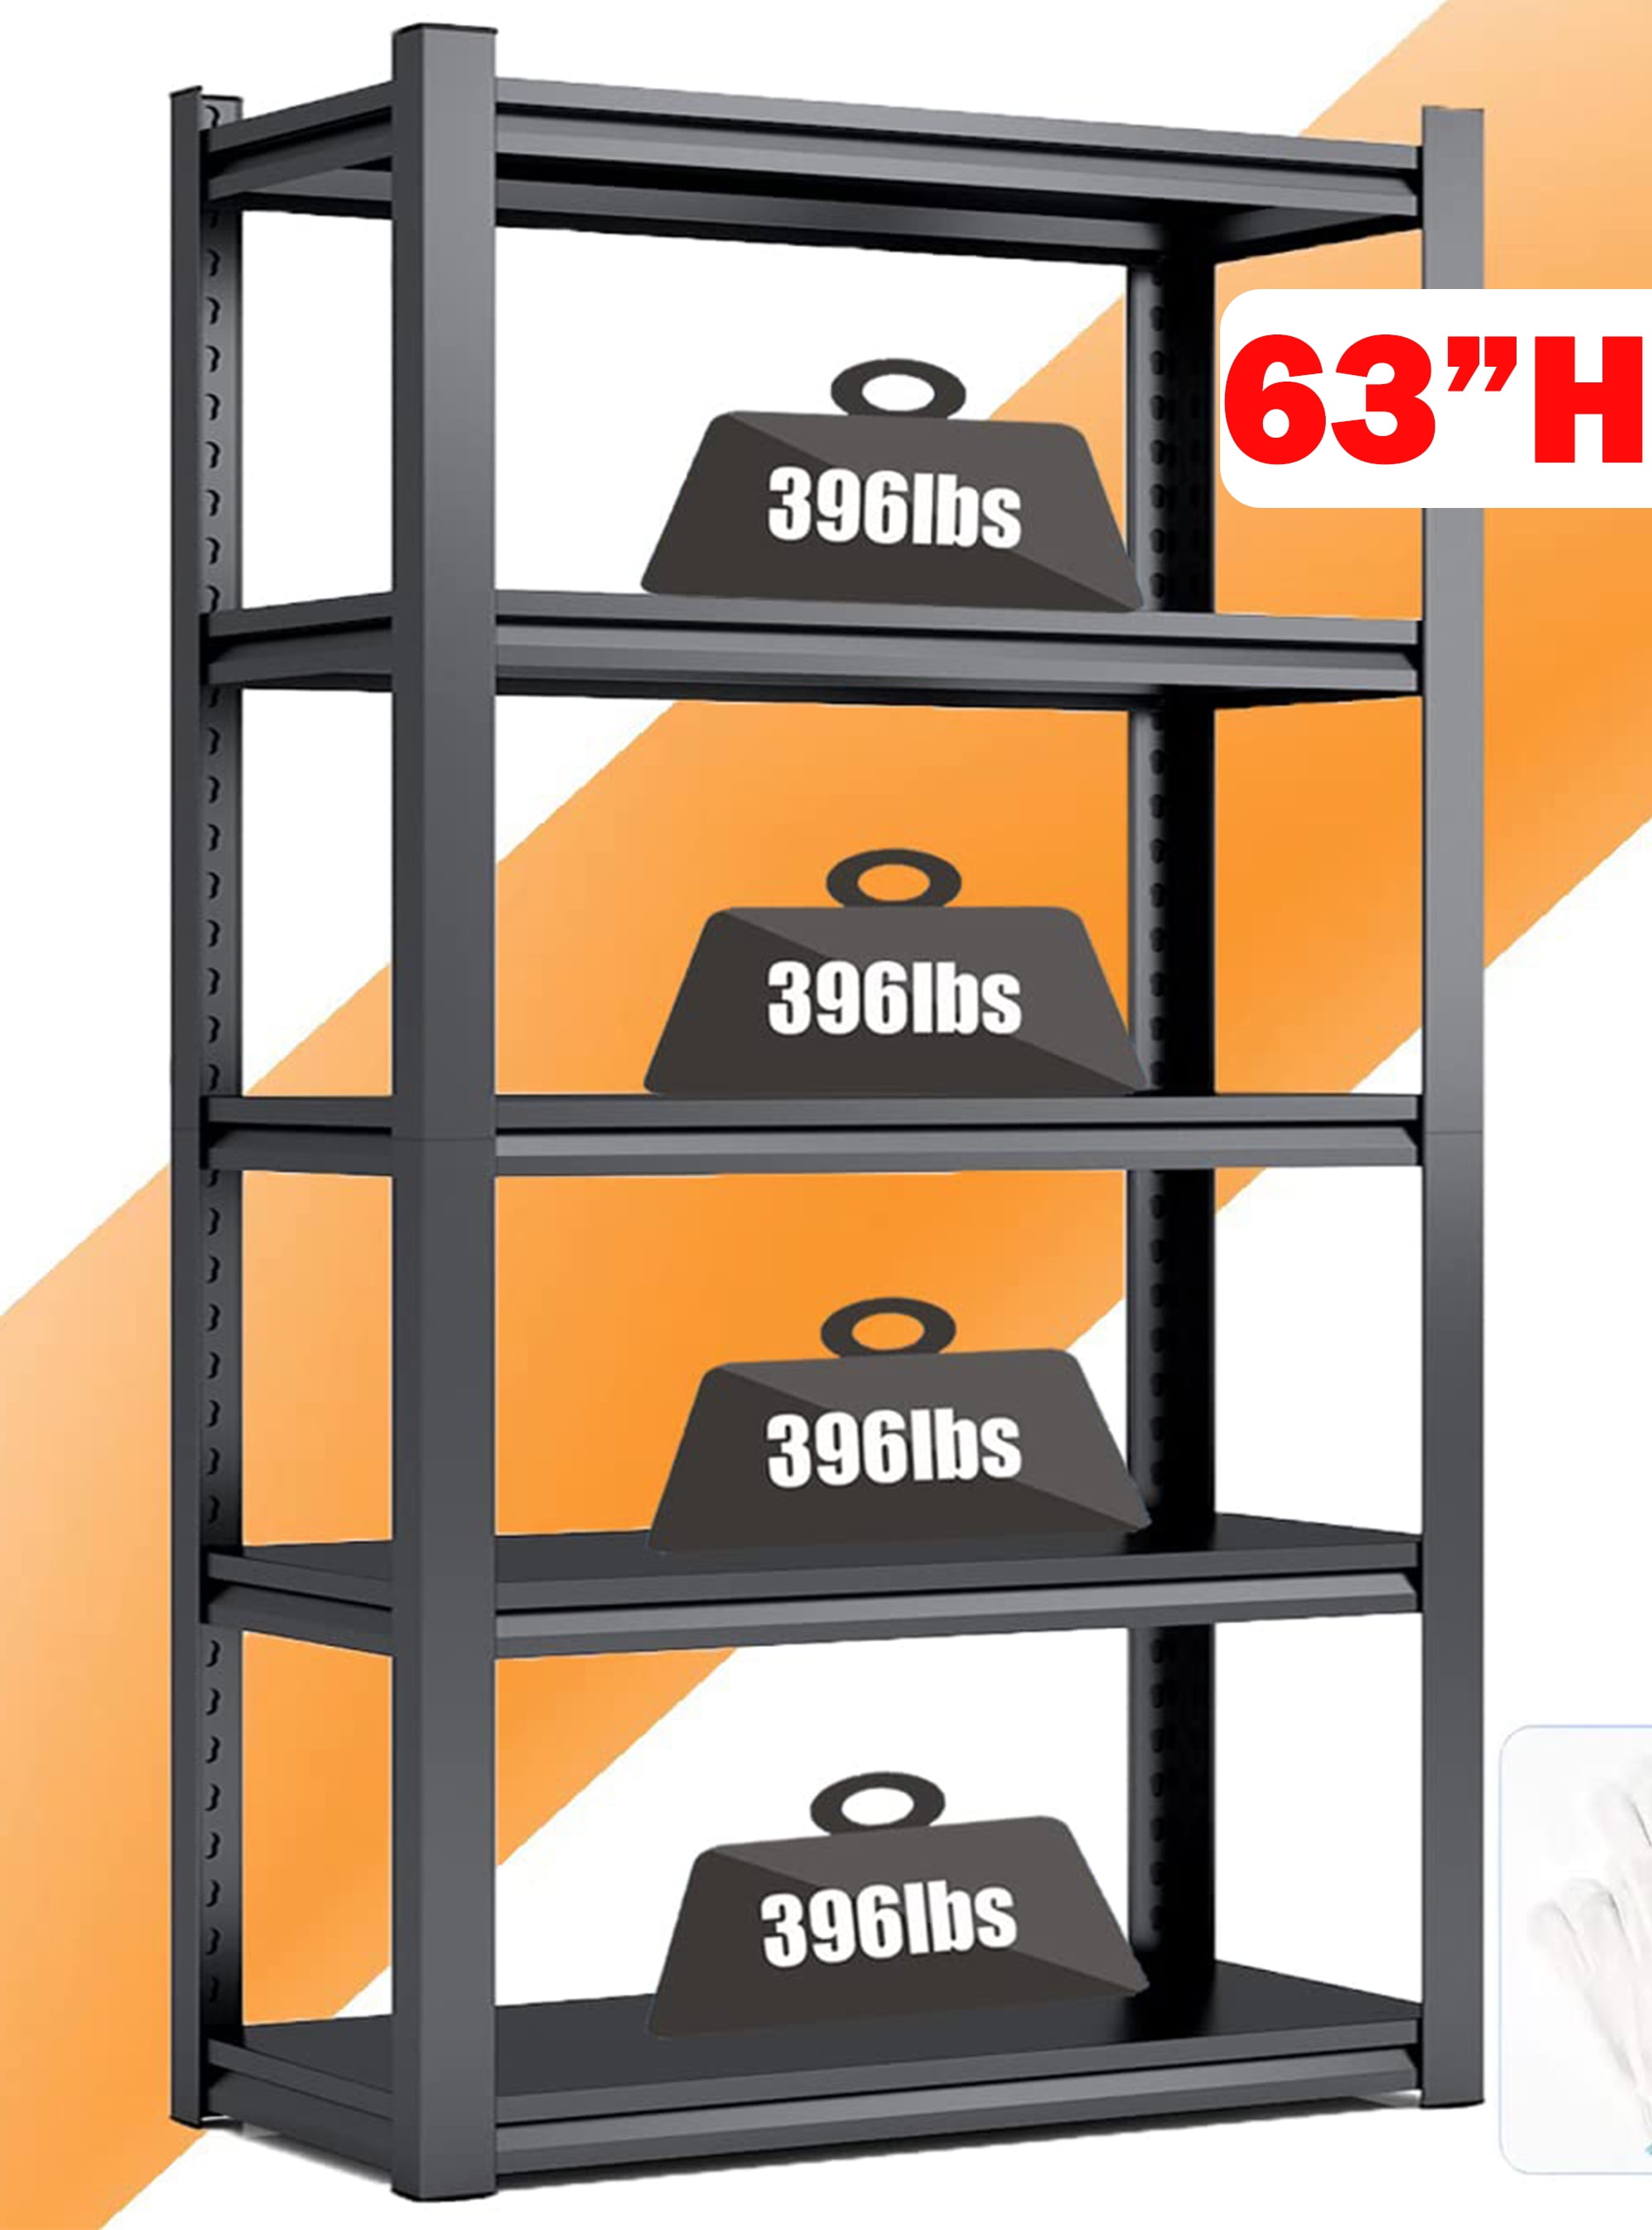 COOKCOK 5-Tier Storage Shelving Unit, Heavy Duty Metal Shelf  27.9x13.4x62.5, Foldable Storage Shelf with Wheels, Garage Shelf, Metal  Storage Rack